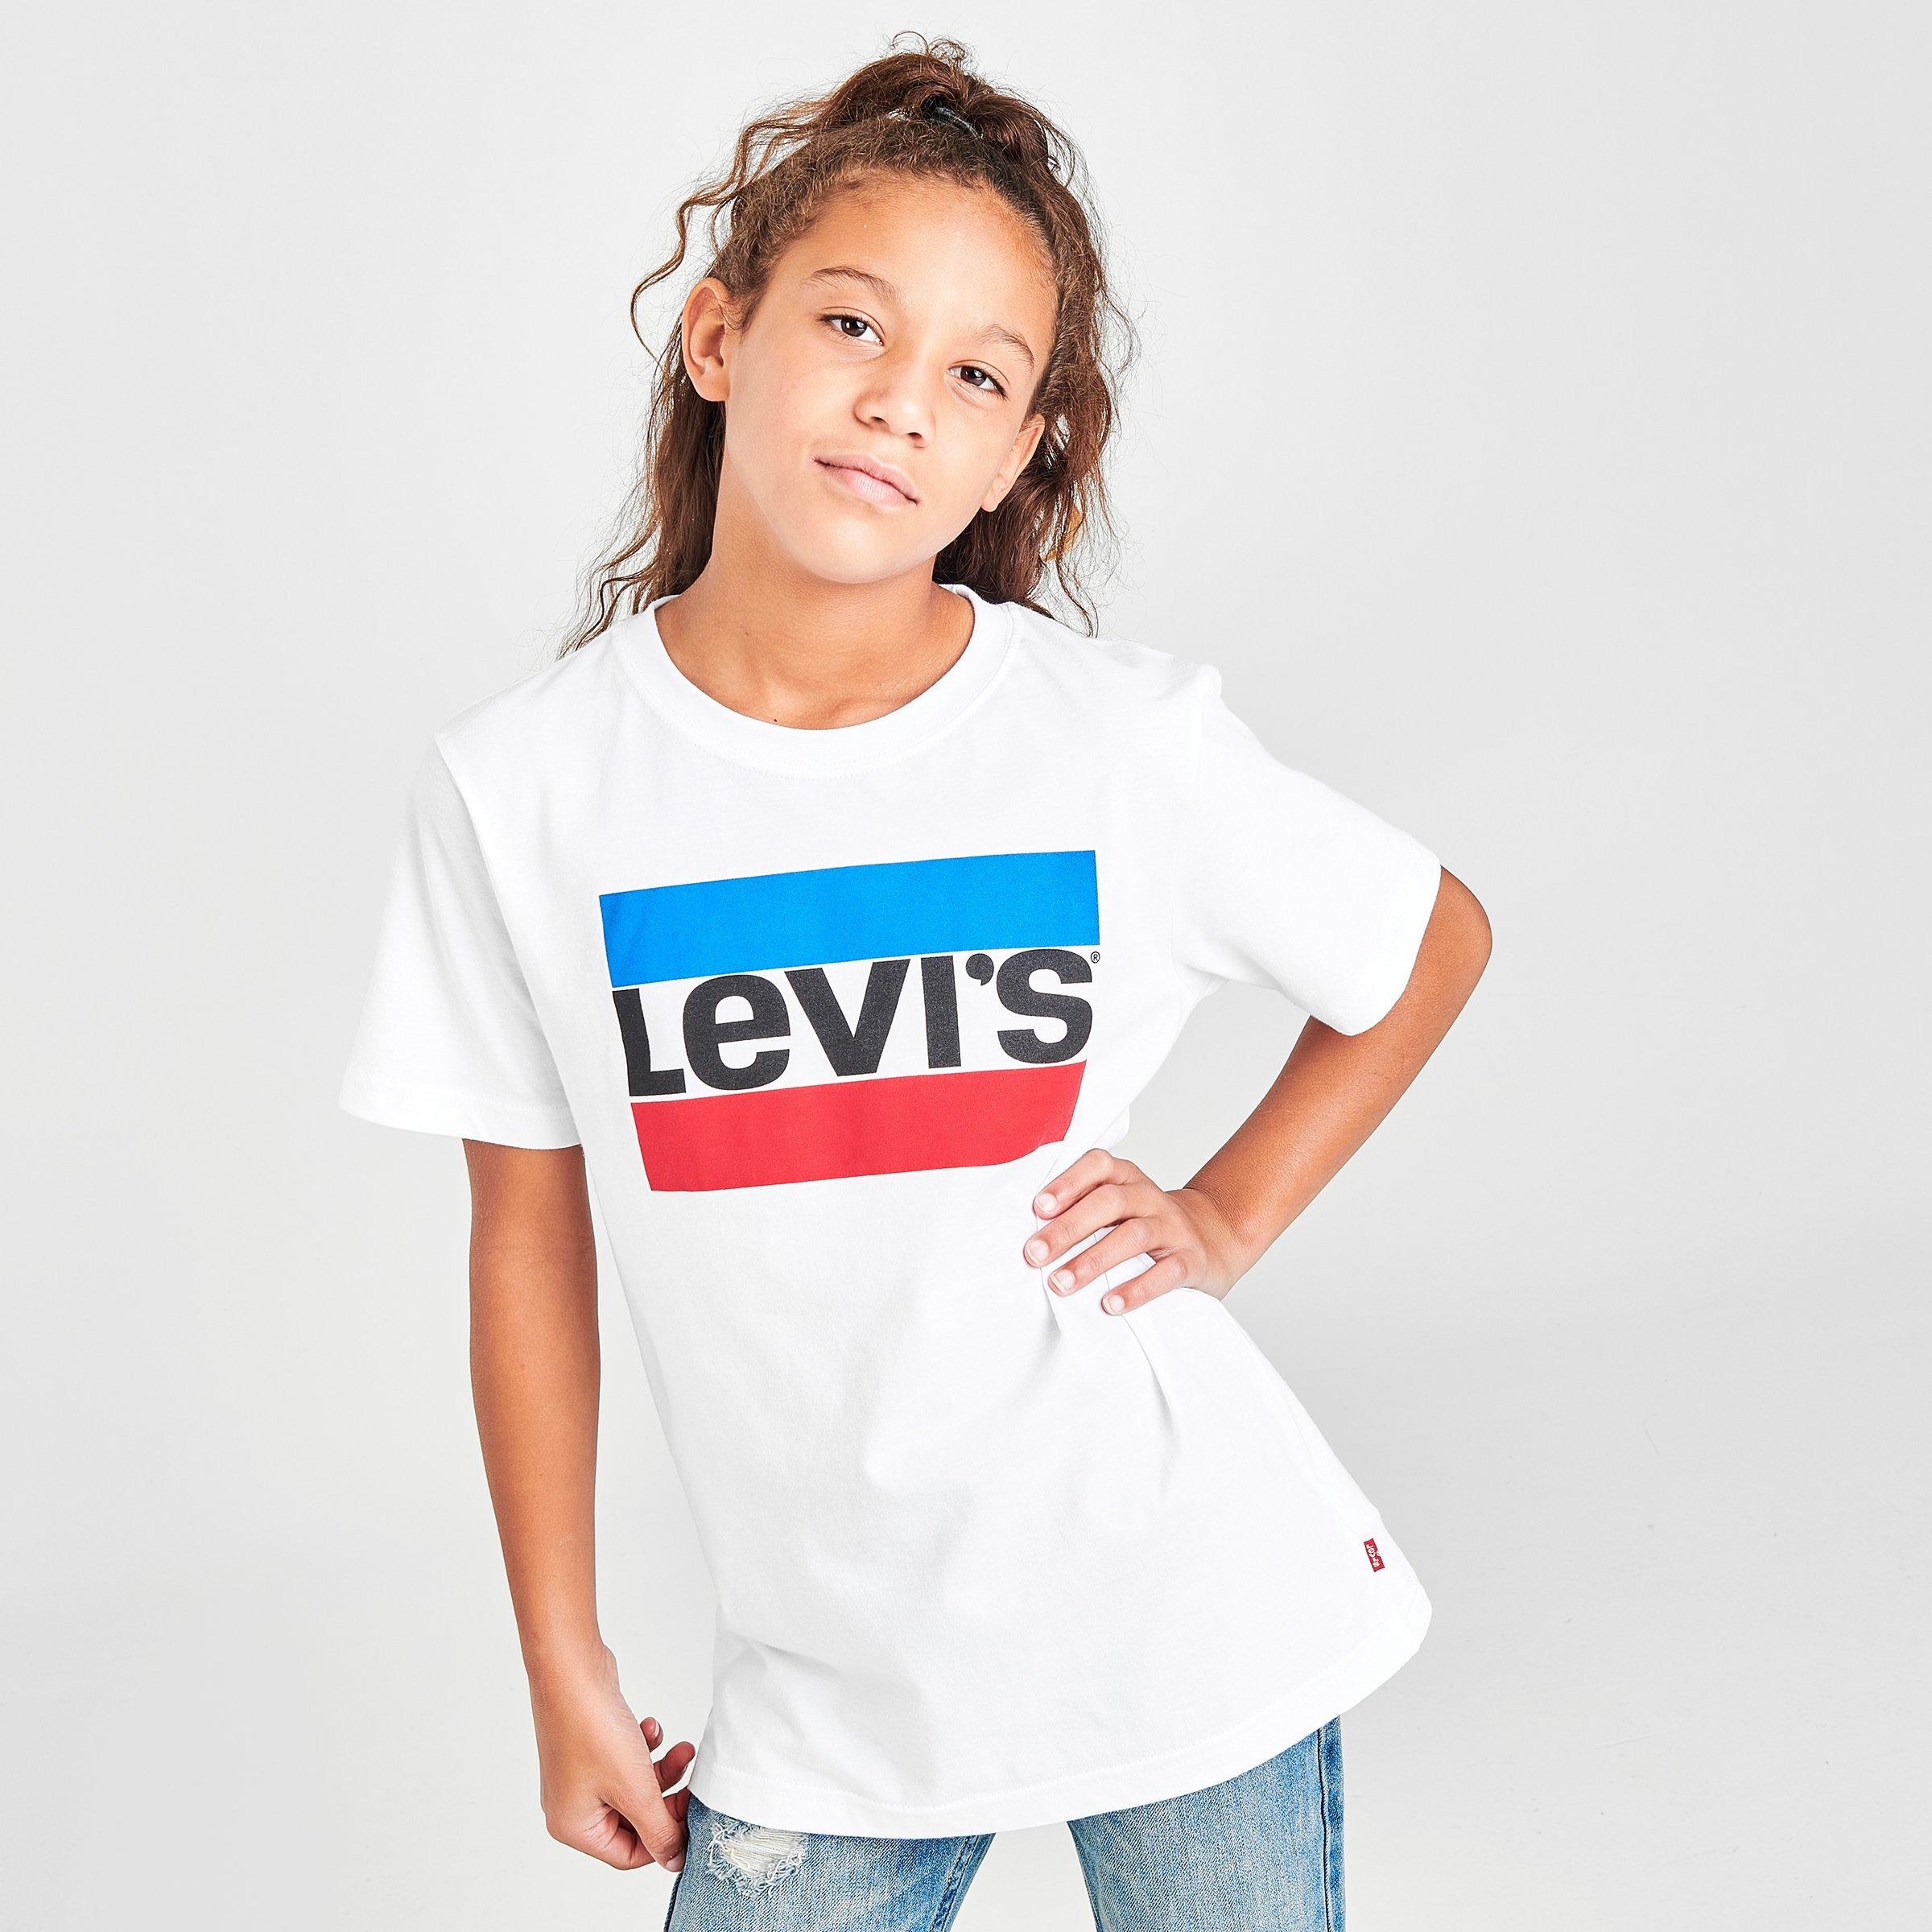 kids levis shirt